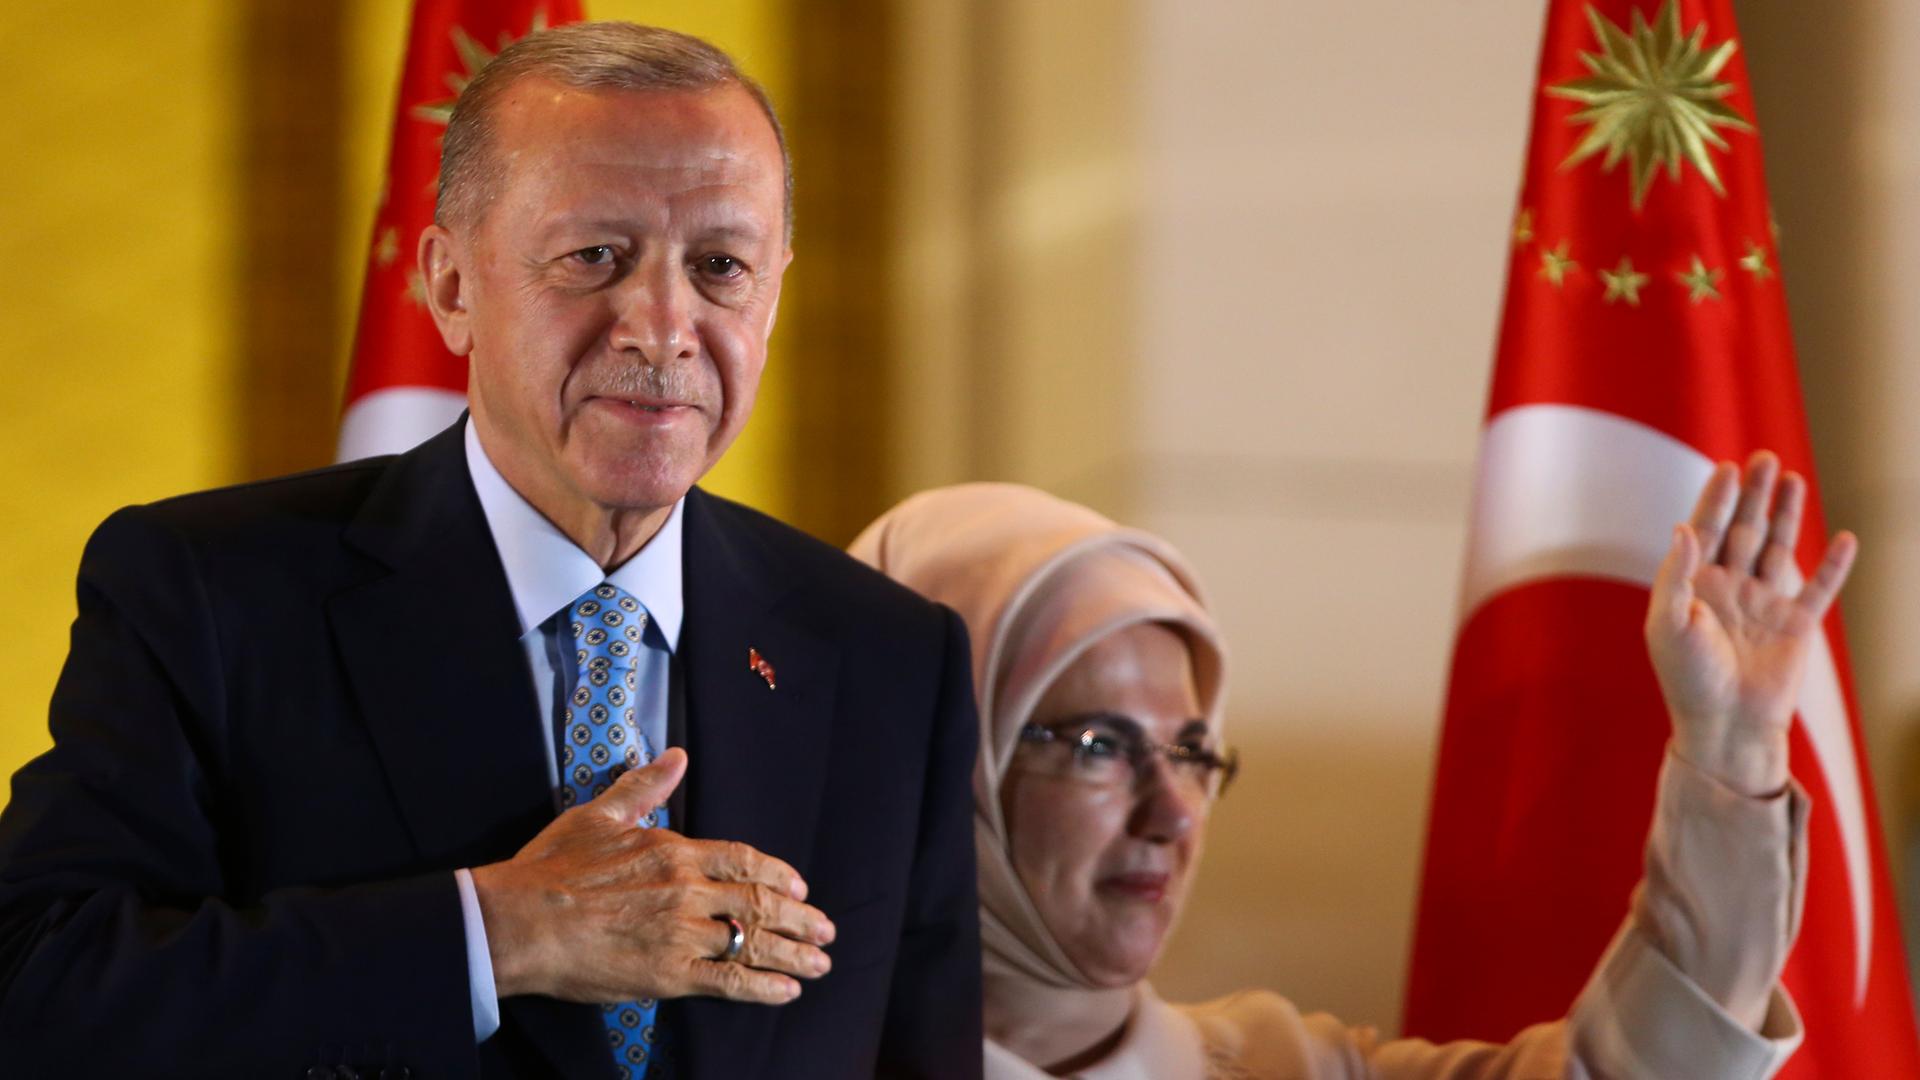 Türkei-Wahl - Wahlbeobachter sprechen von "ungerechtfertigten" Vorteilen für Erdogan